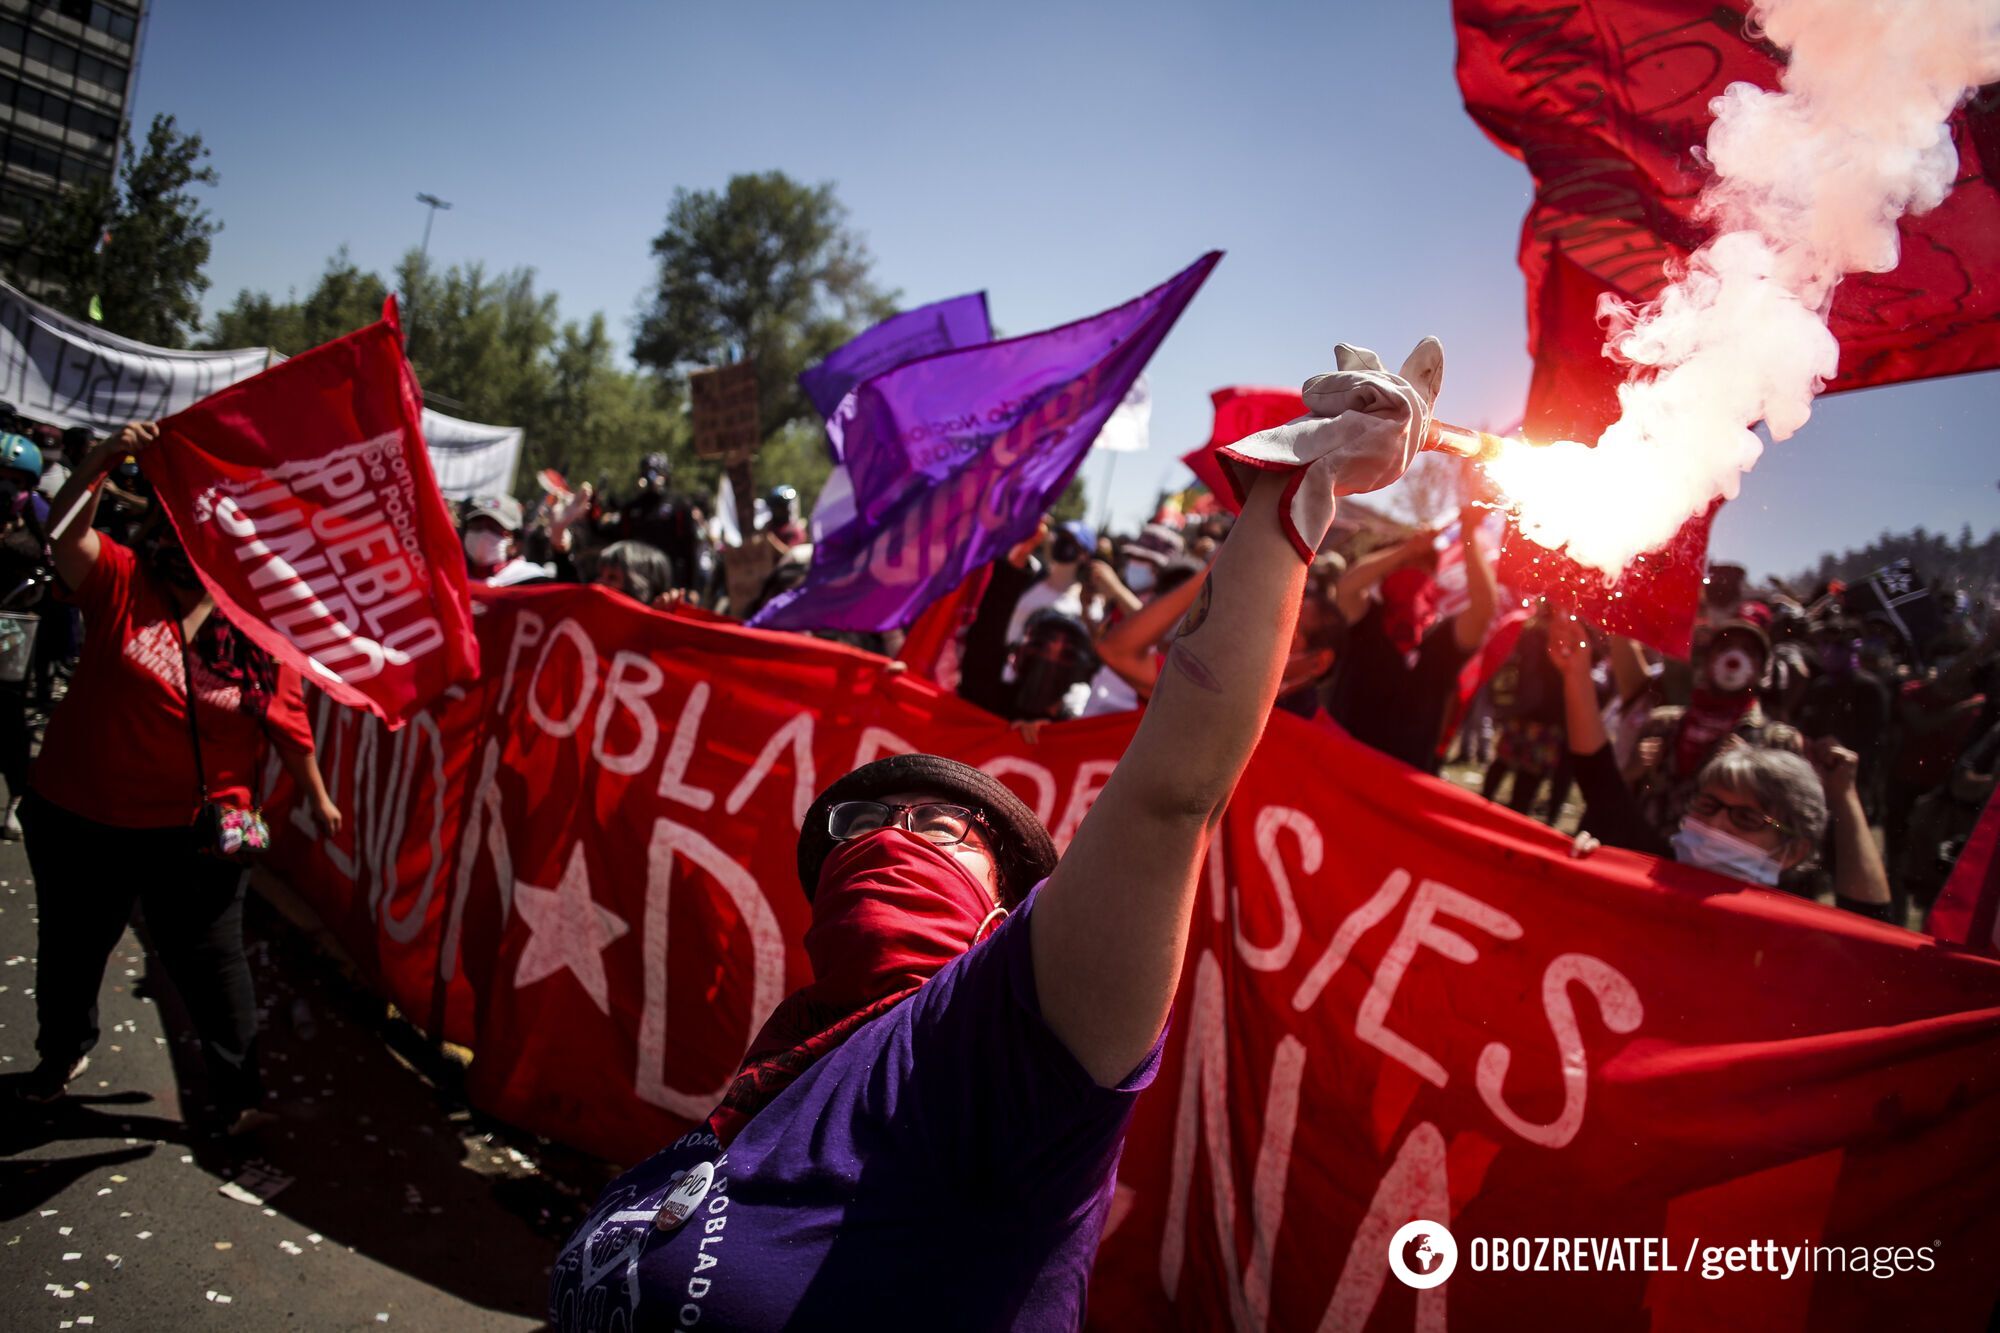 Відзначити річницю протестів у Сантьяго вийшли близько 25 тисяч осіб.